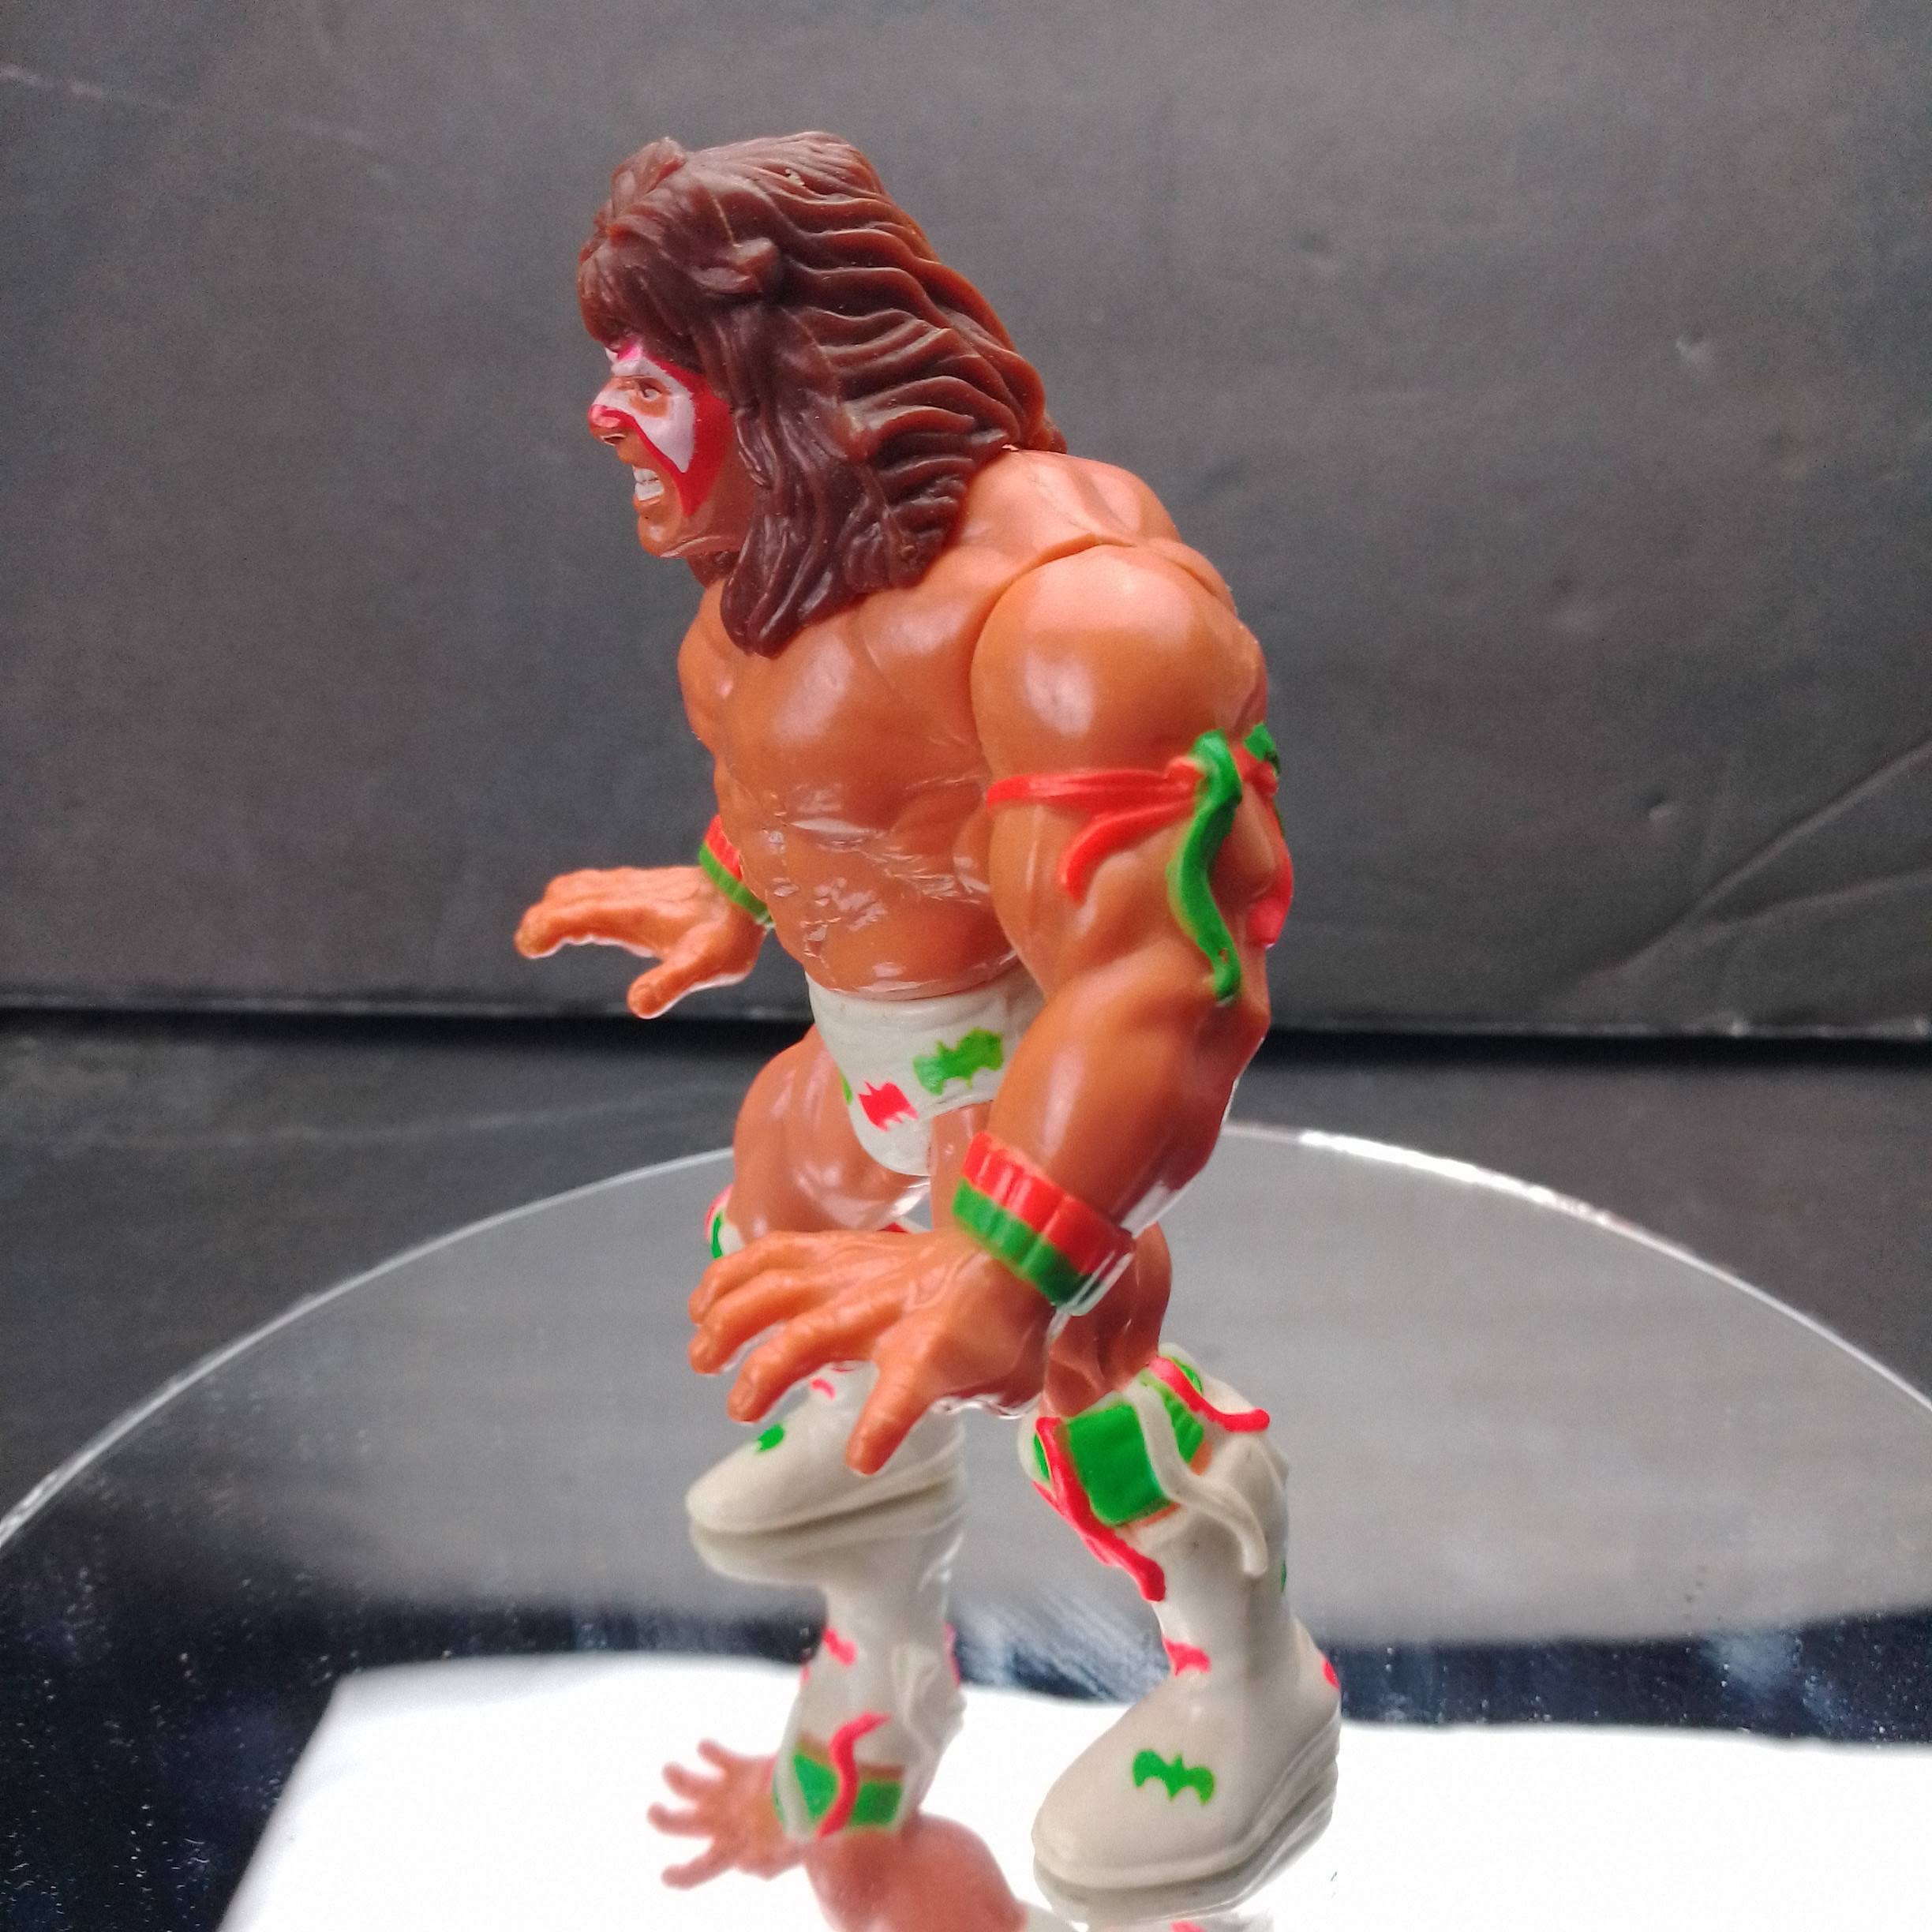 Buy 1991 Ultimate Warrior Action Figure 2